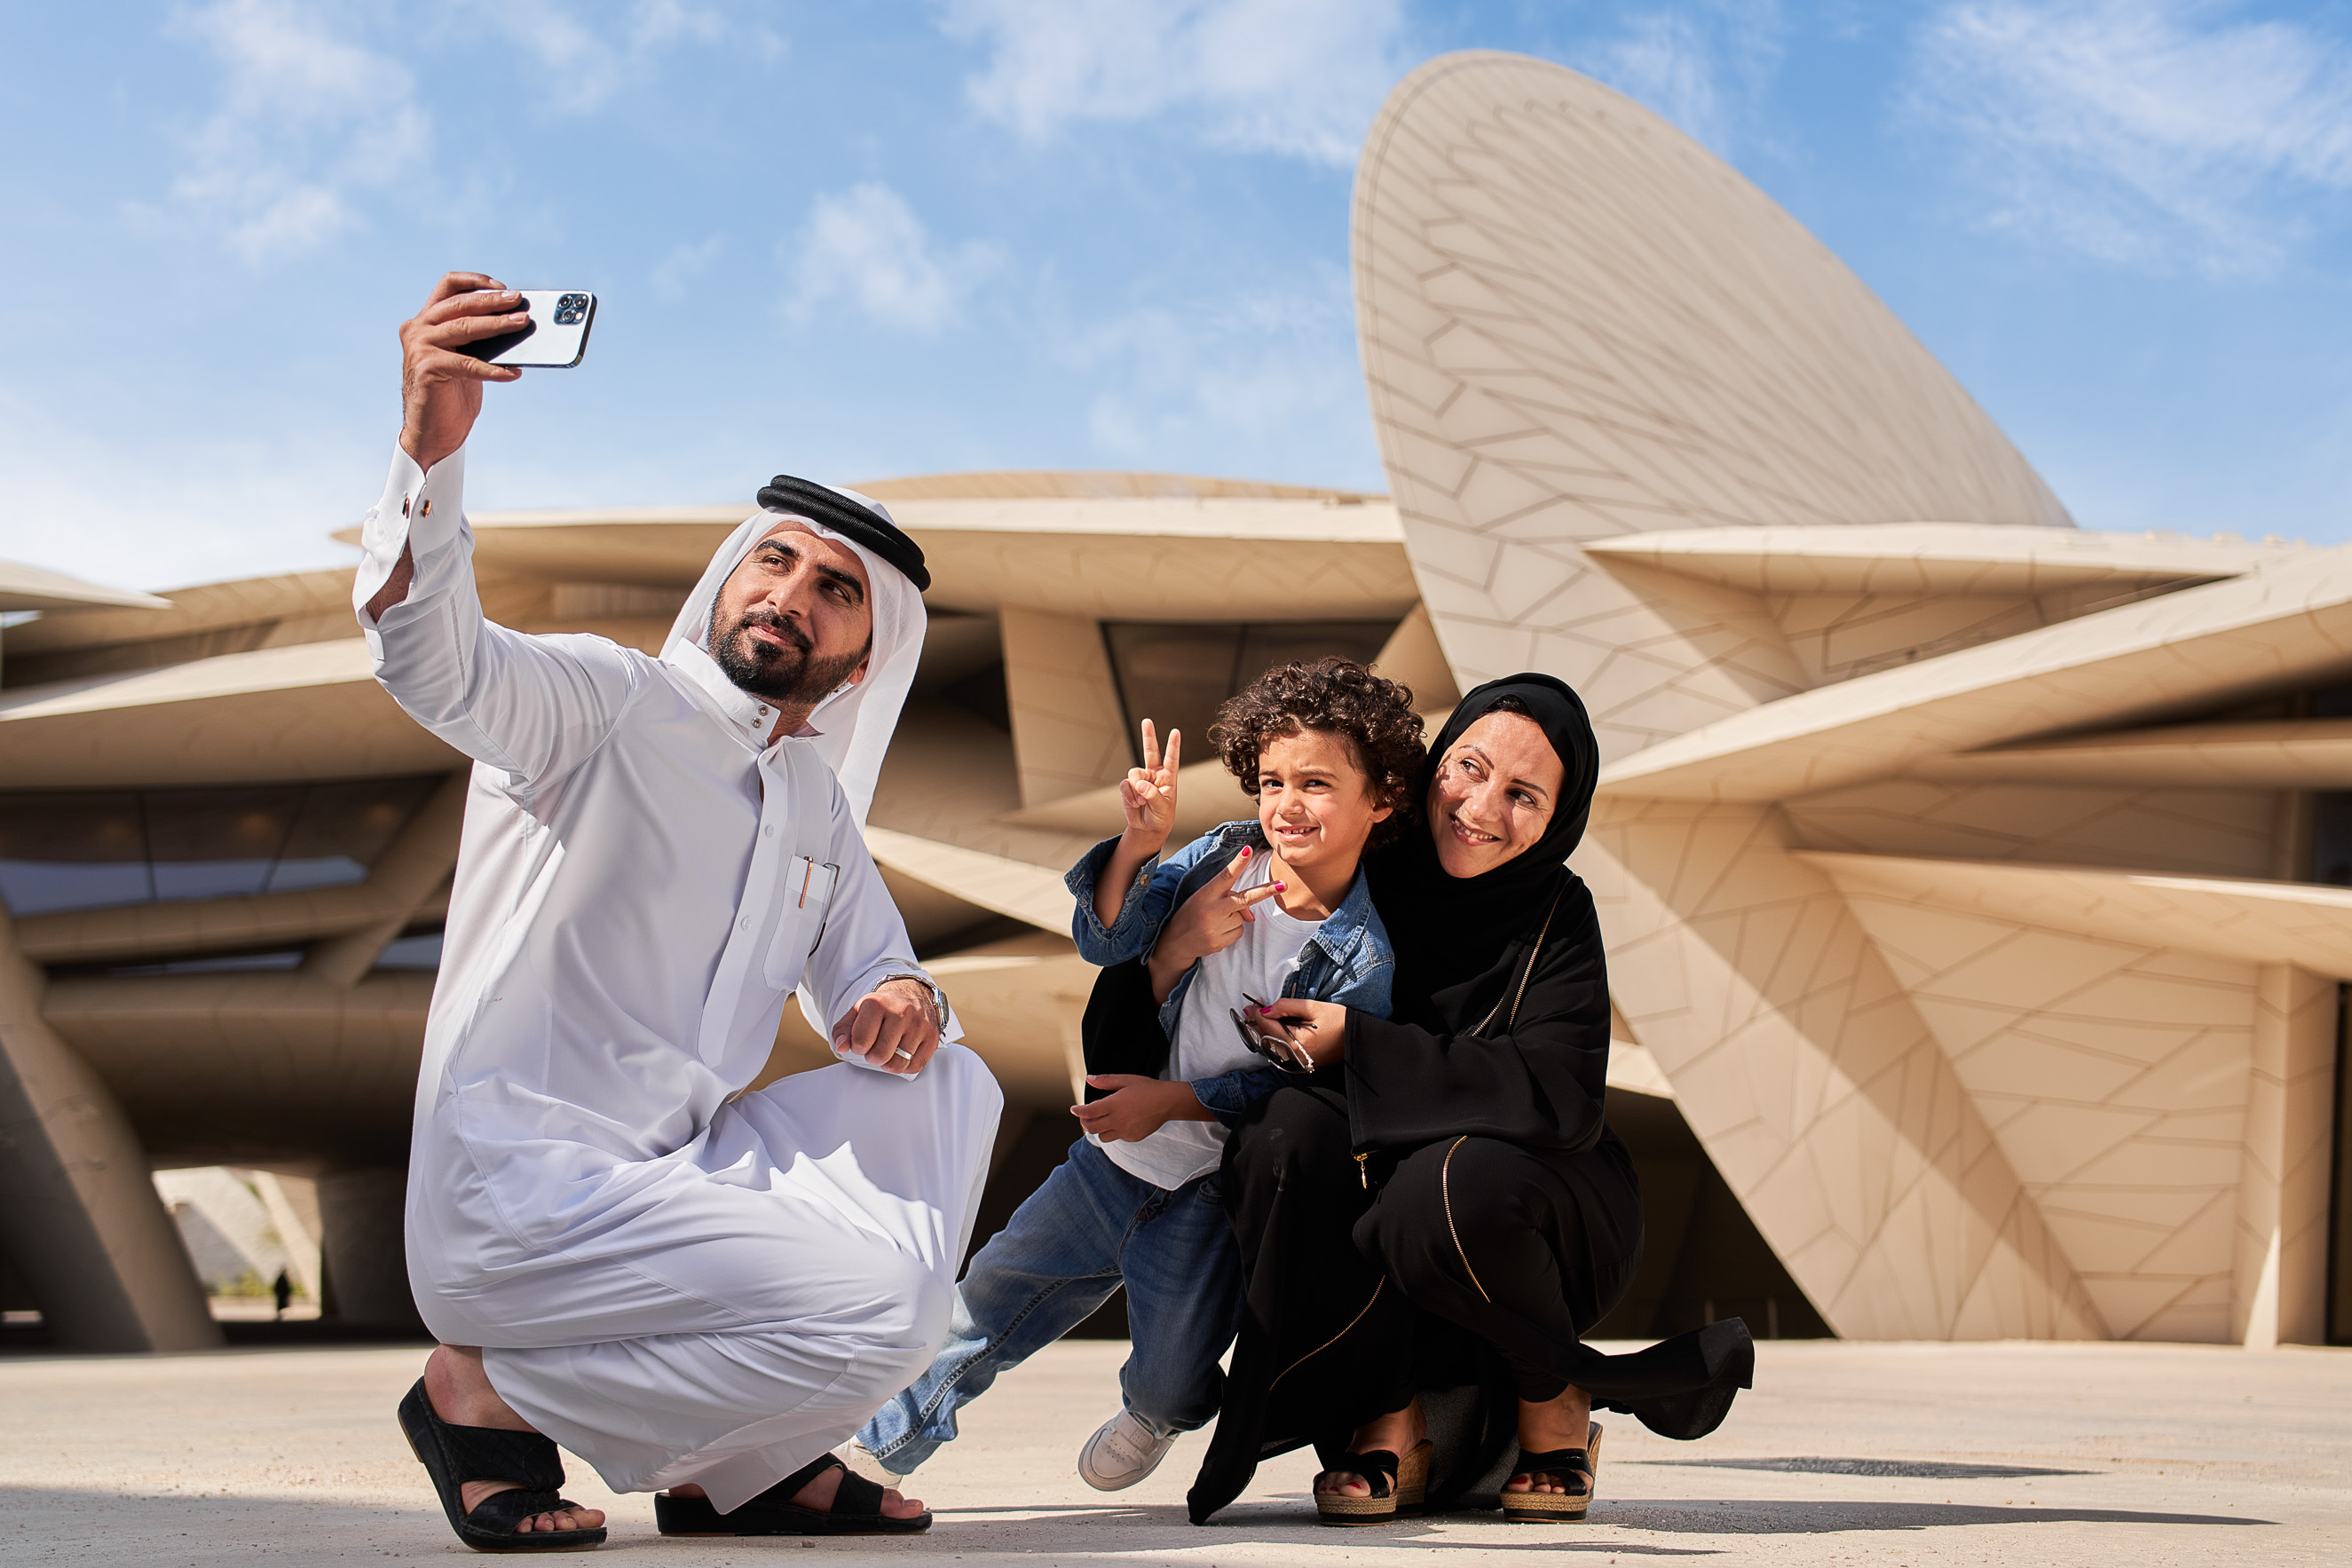 Le cinque migliori attività per la tua sosta in Qatar